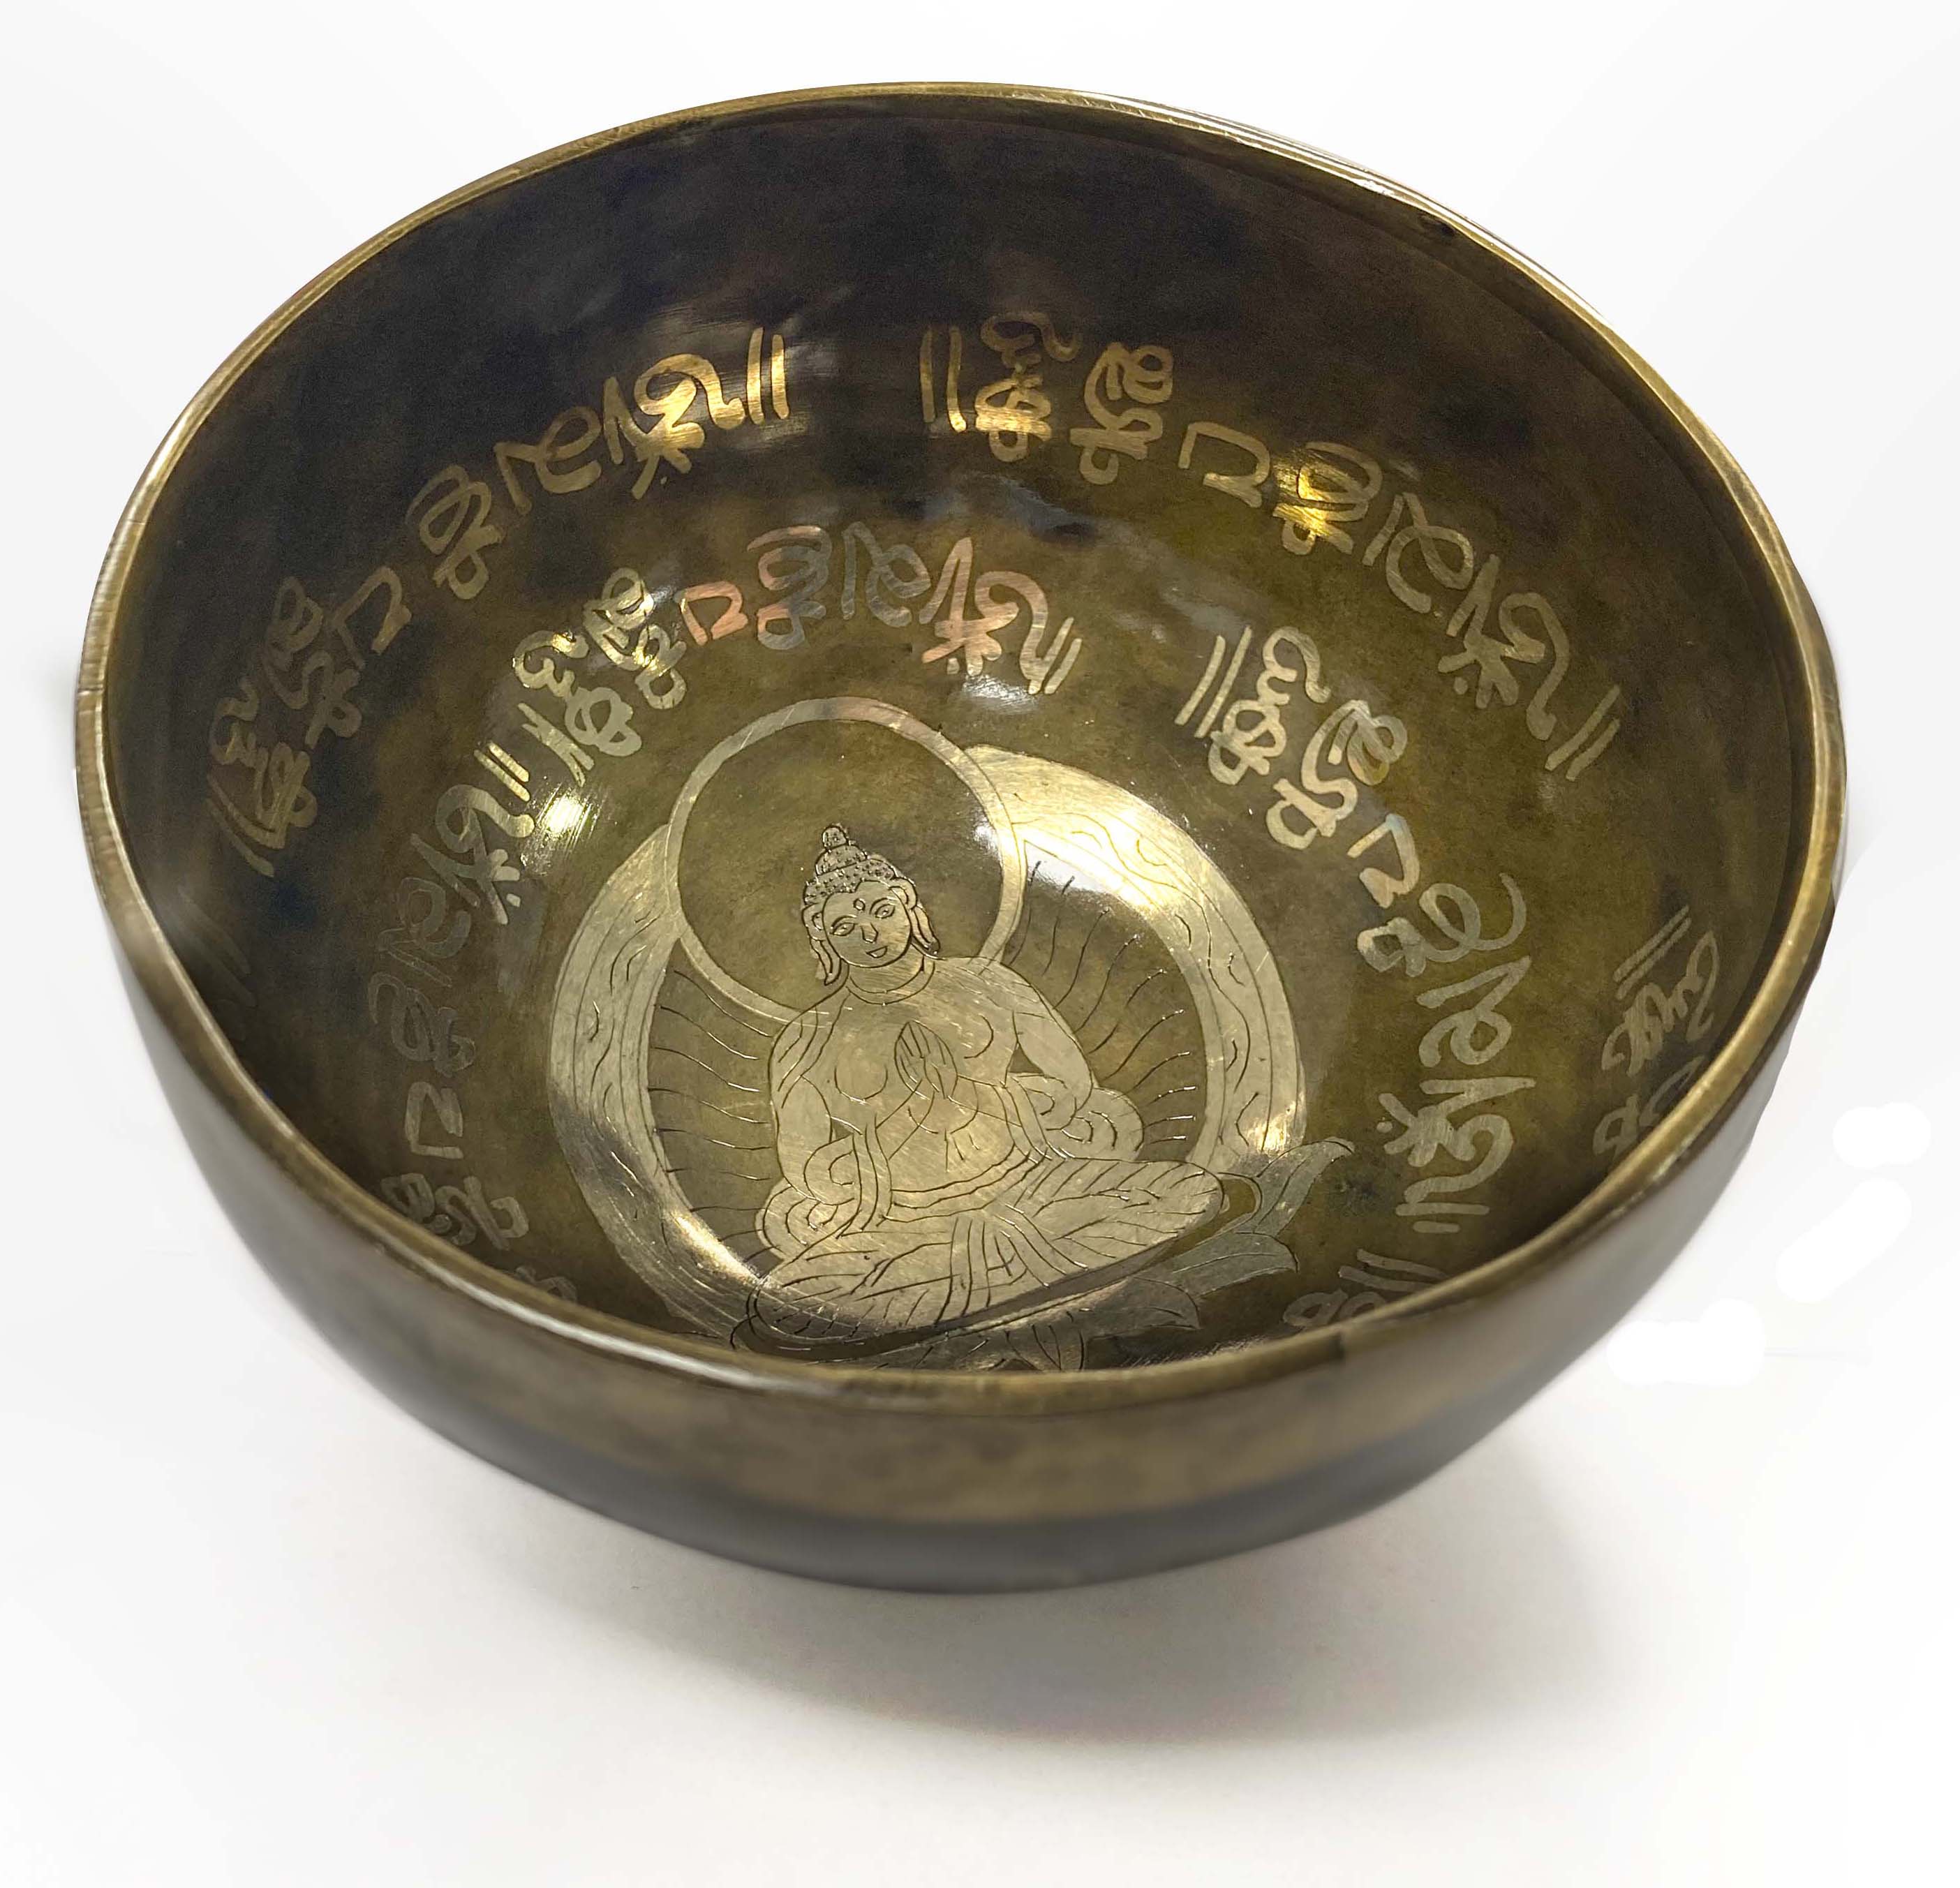 Tibetan singing bowl with engravings - Buddha - 14cm